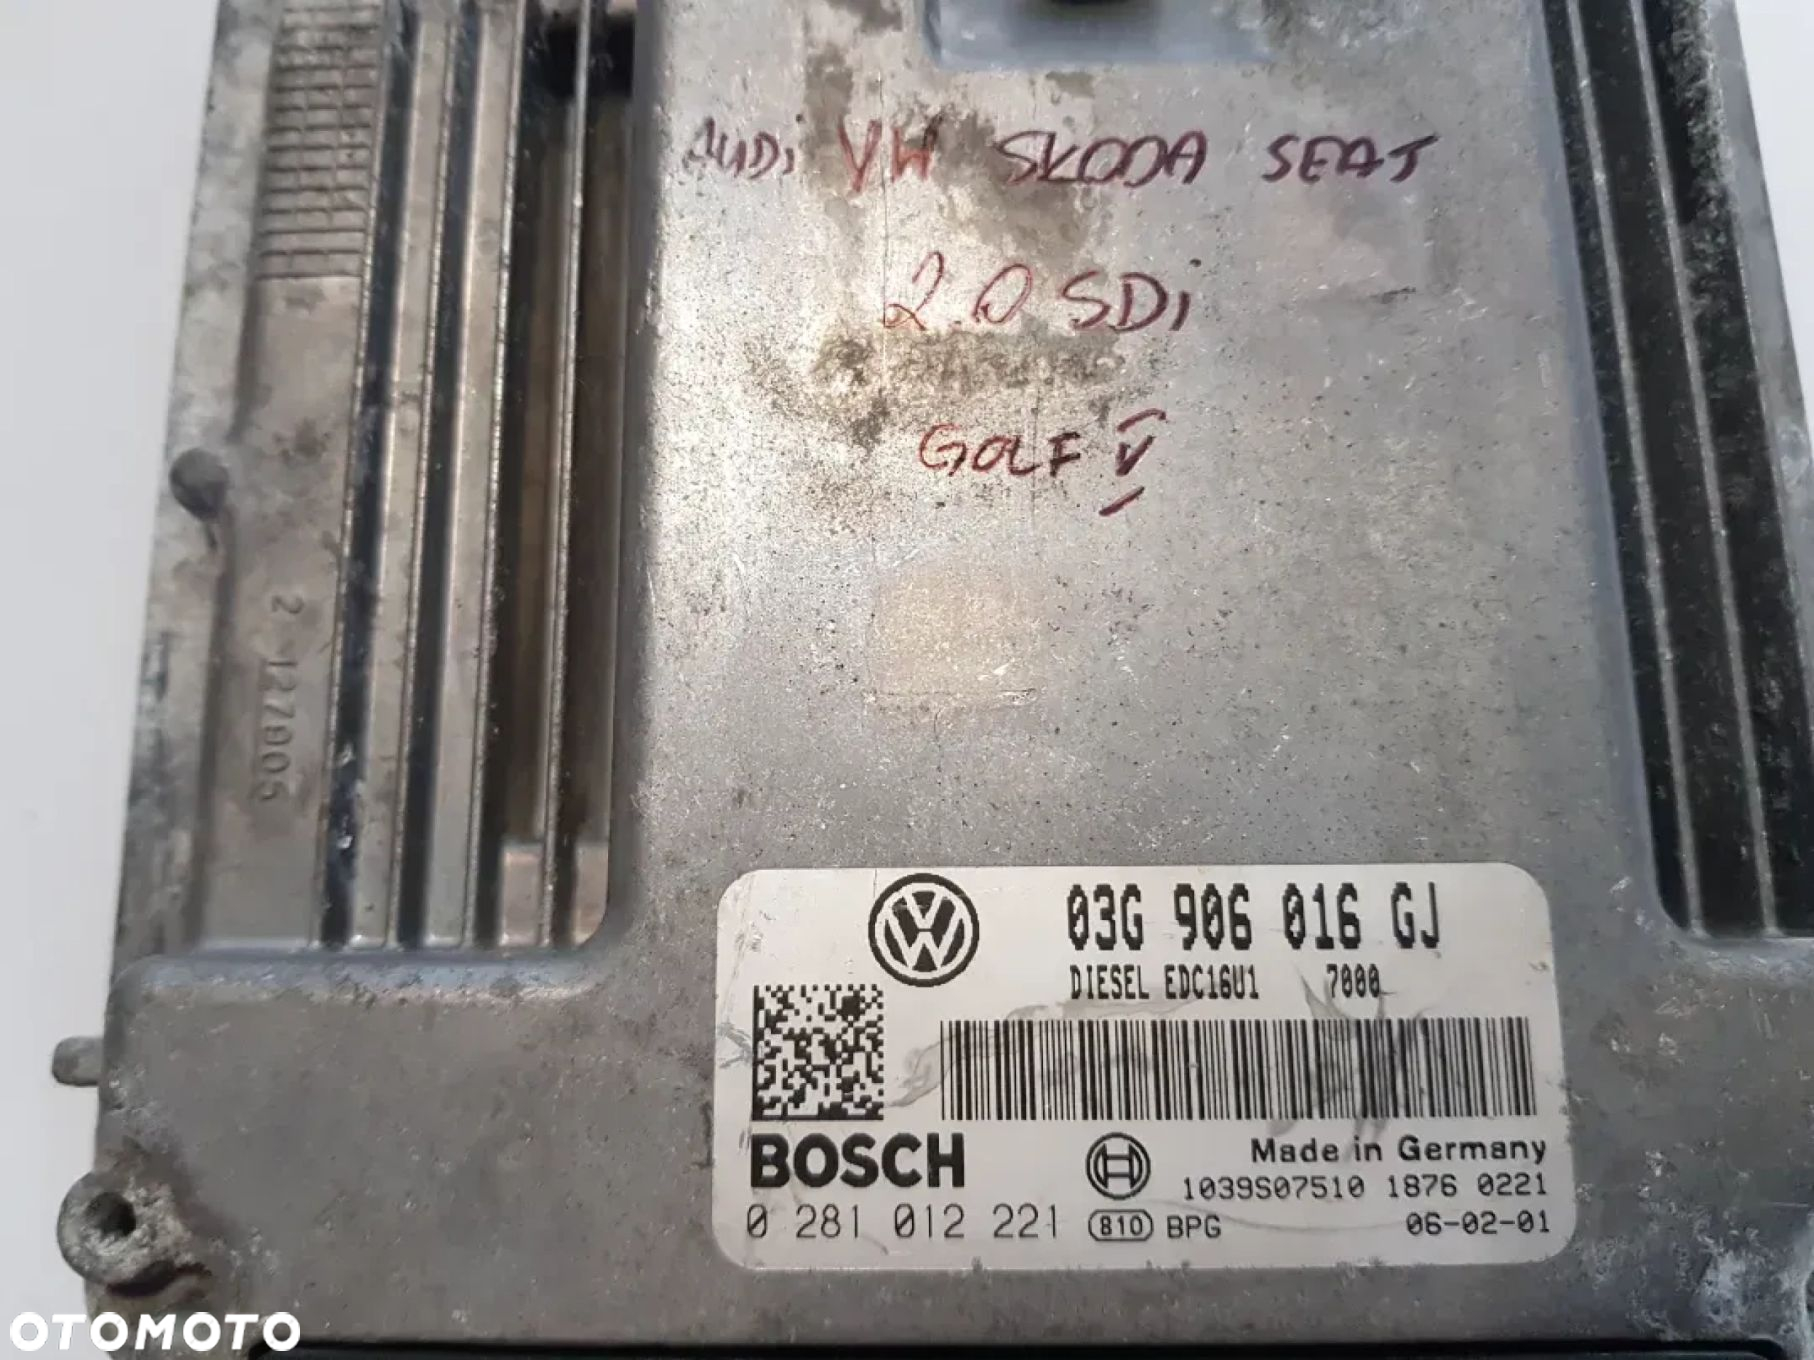 Sterownik komputer silnika Audi Vw Skoda Seat 2.0 sdi Golf V 03g906016gj - 4